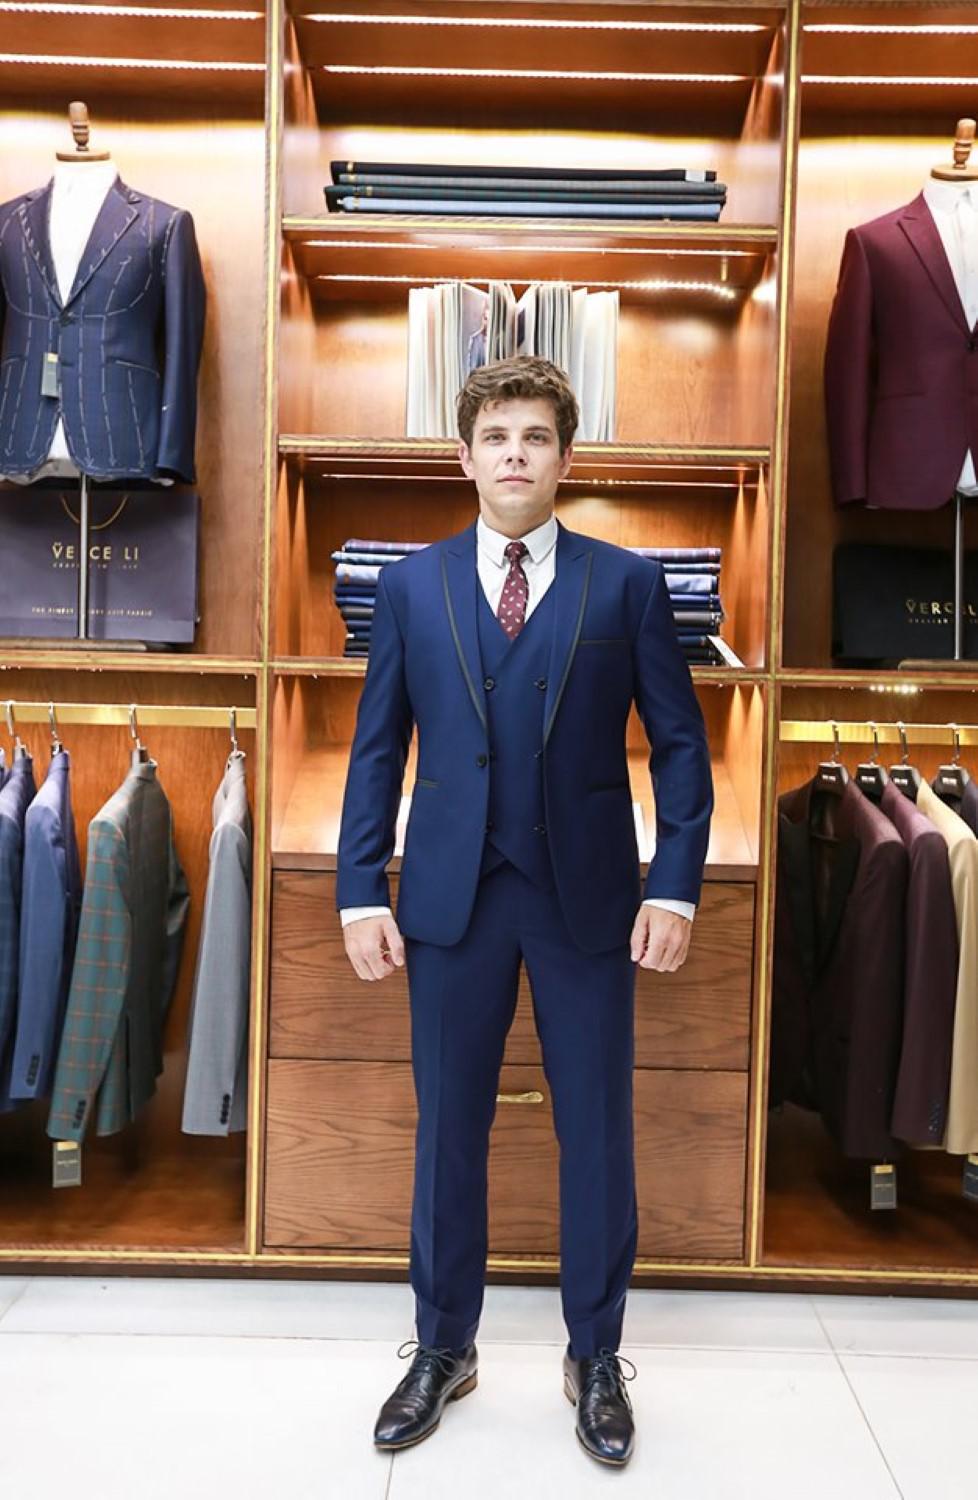 Bộ Suit doanh nhân Xanh đen G84.007